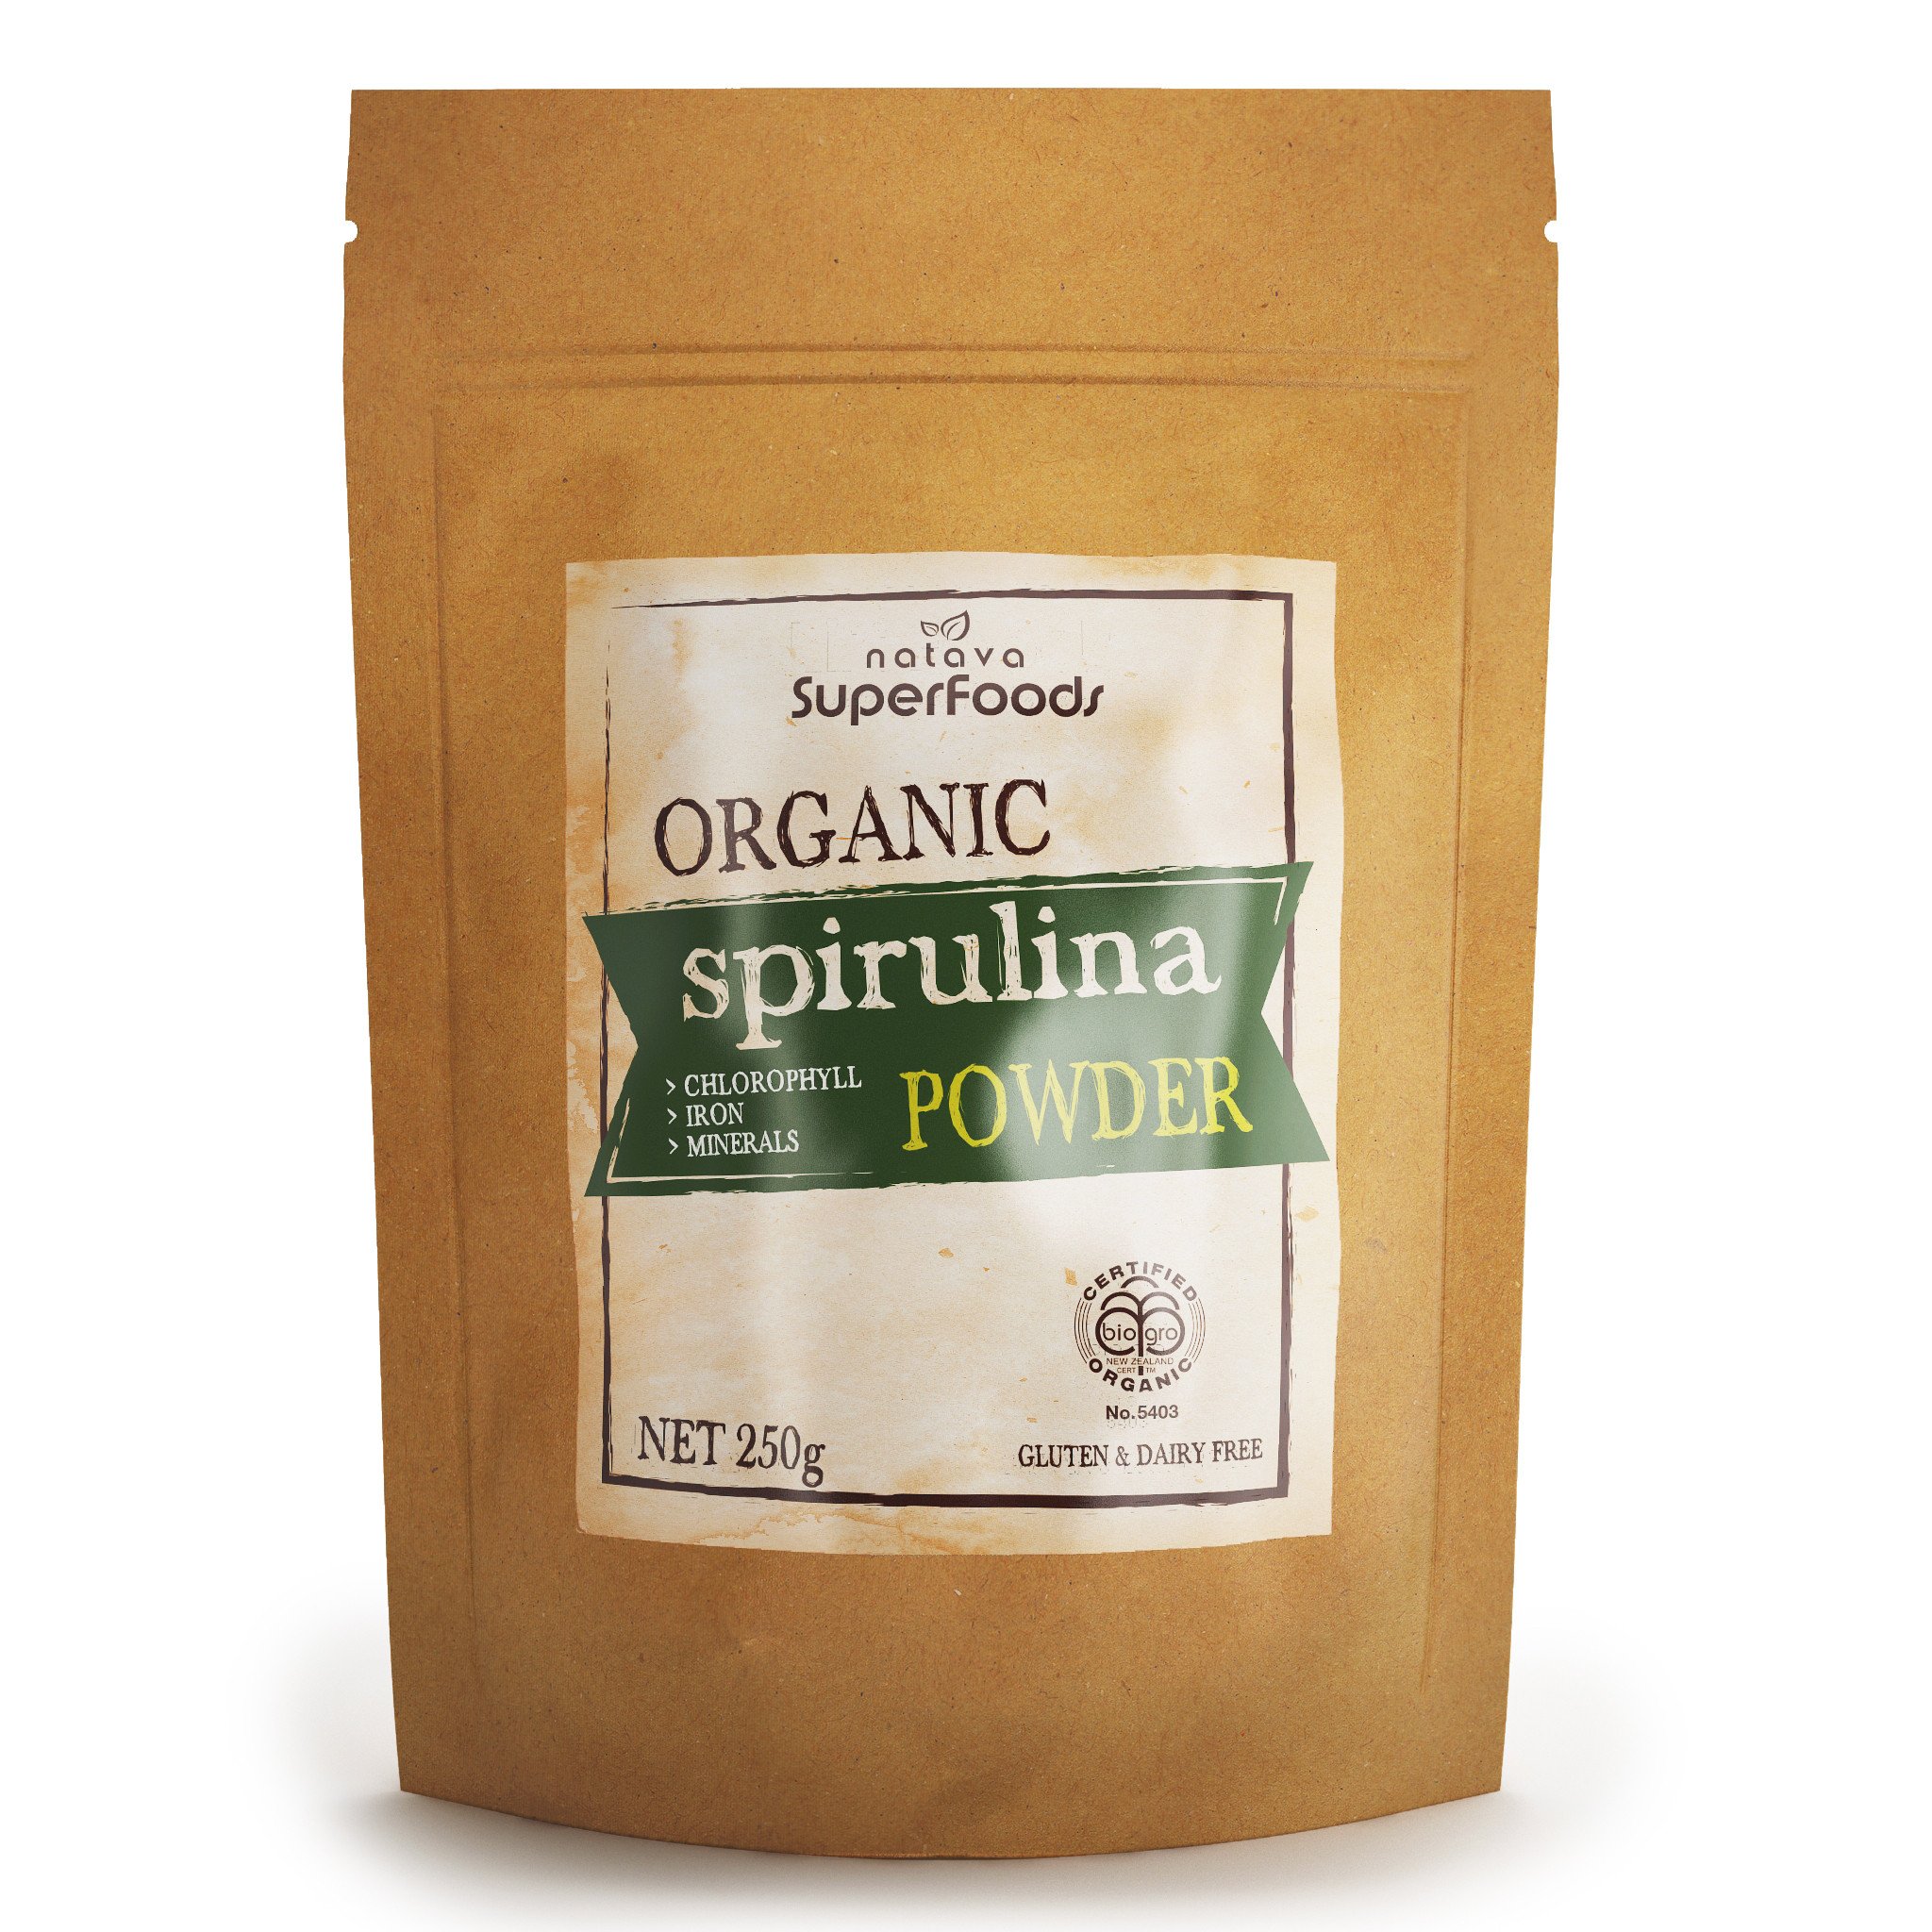 Buy Natava Superfoods - Organic Spirulina Powder Online - 250g and 500g